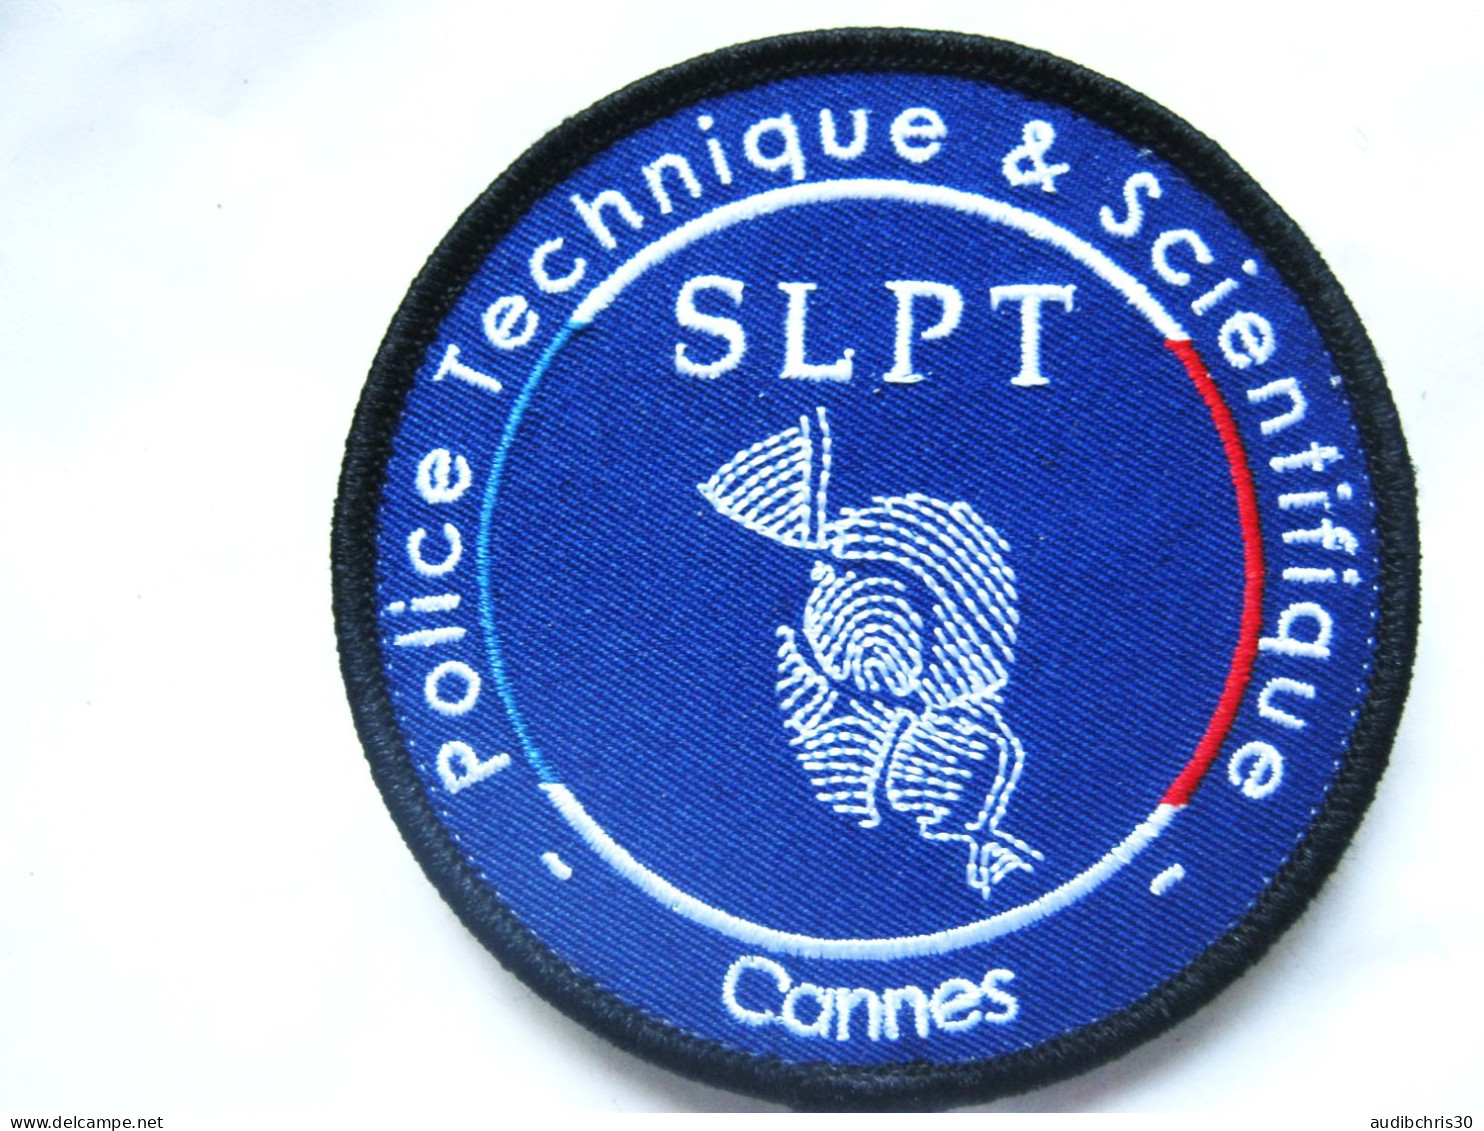 ECUSSON POLICE PTS / SLPT DE CANNES 06 (fond Bleu) SCRATCH AU DOS 85MM ETAT EXCELLENT - Polizei